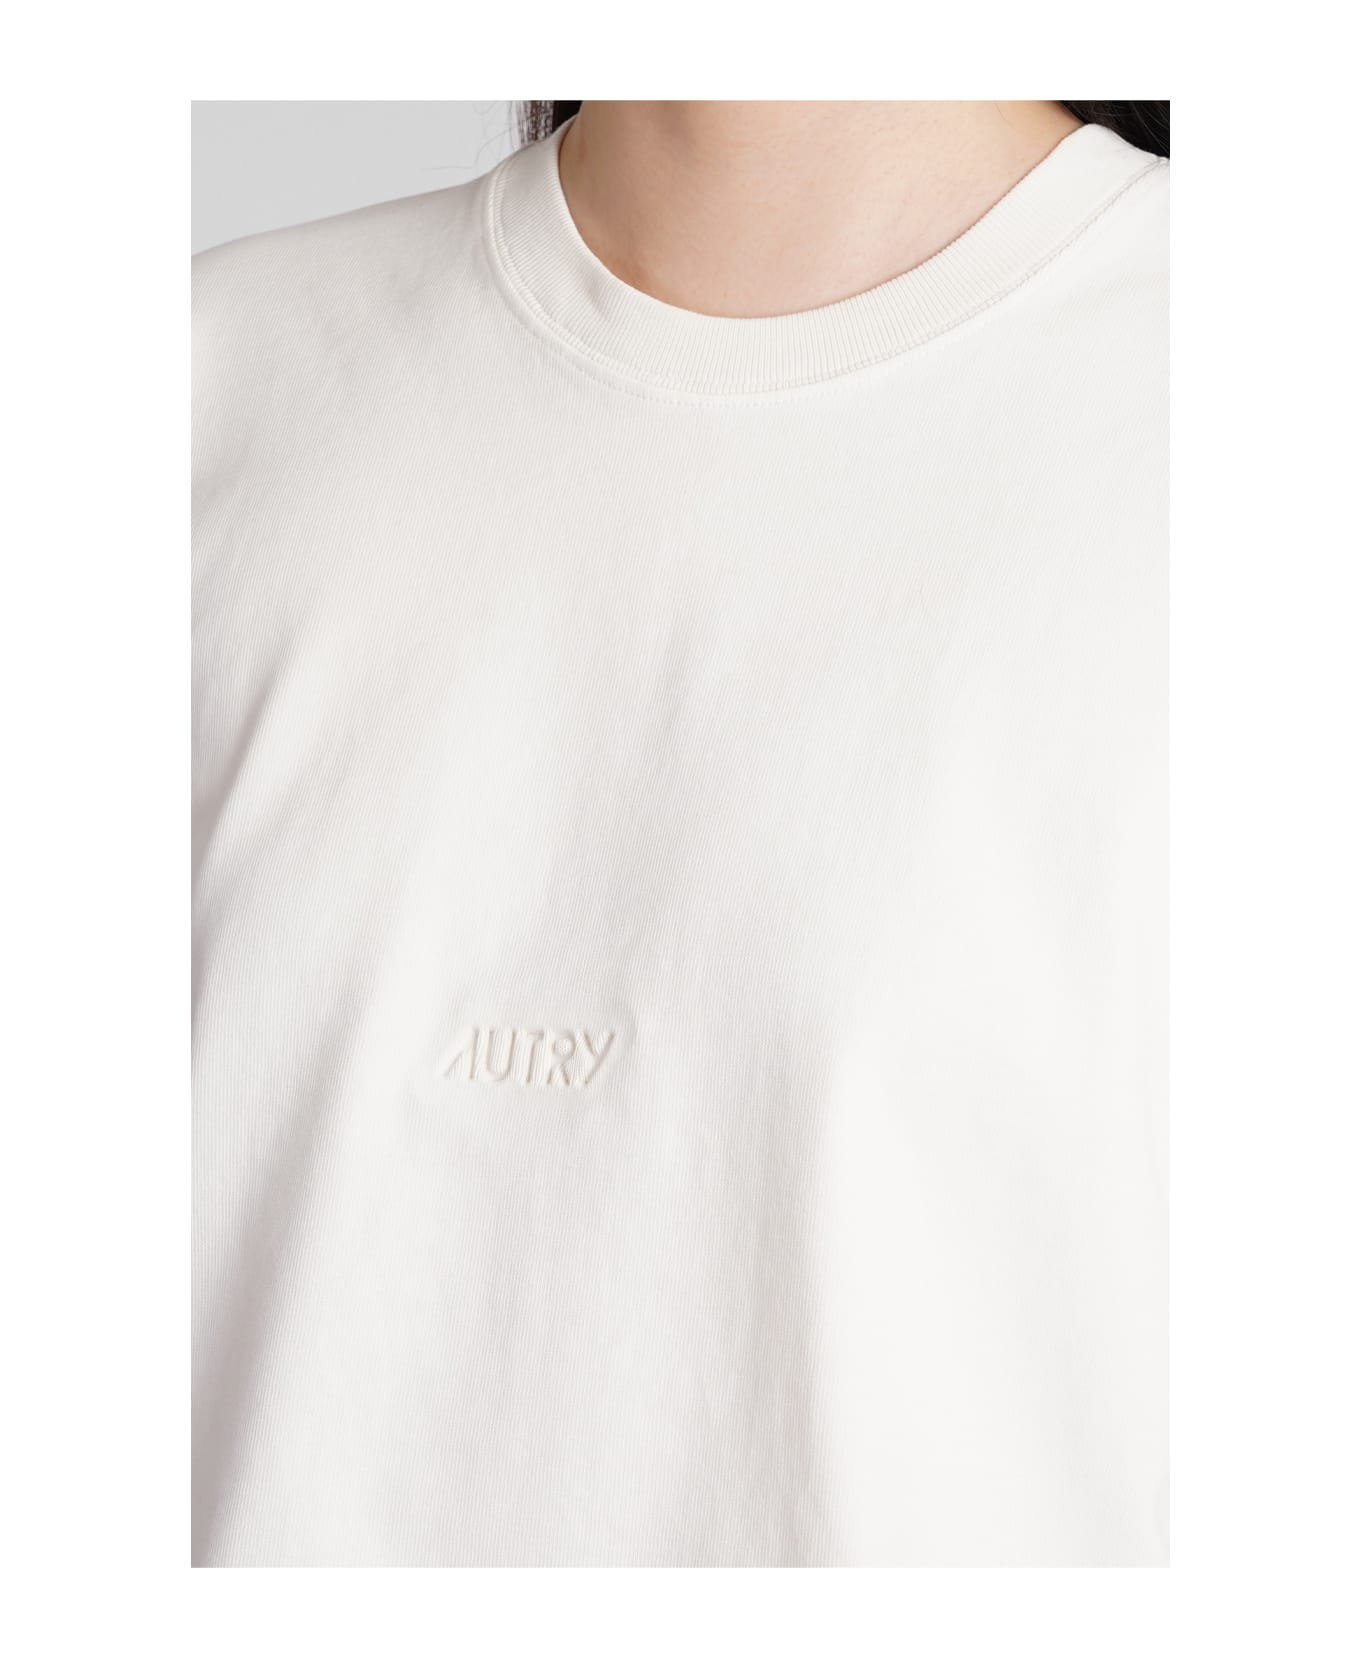 Autry T-shirt In Beige Cotton - beige